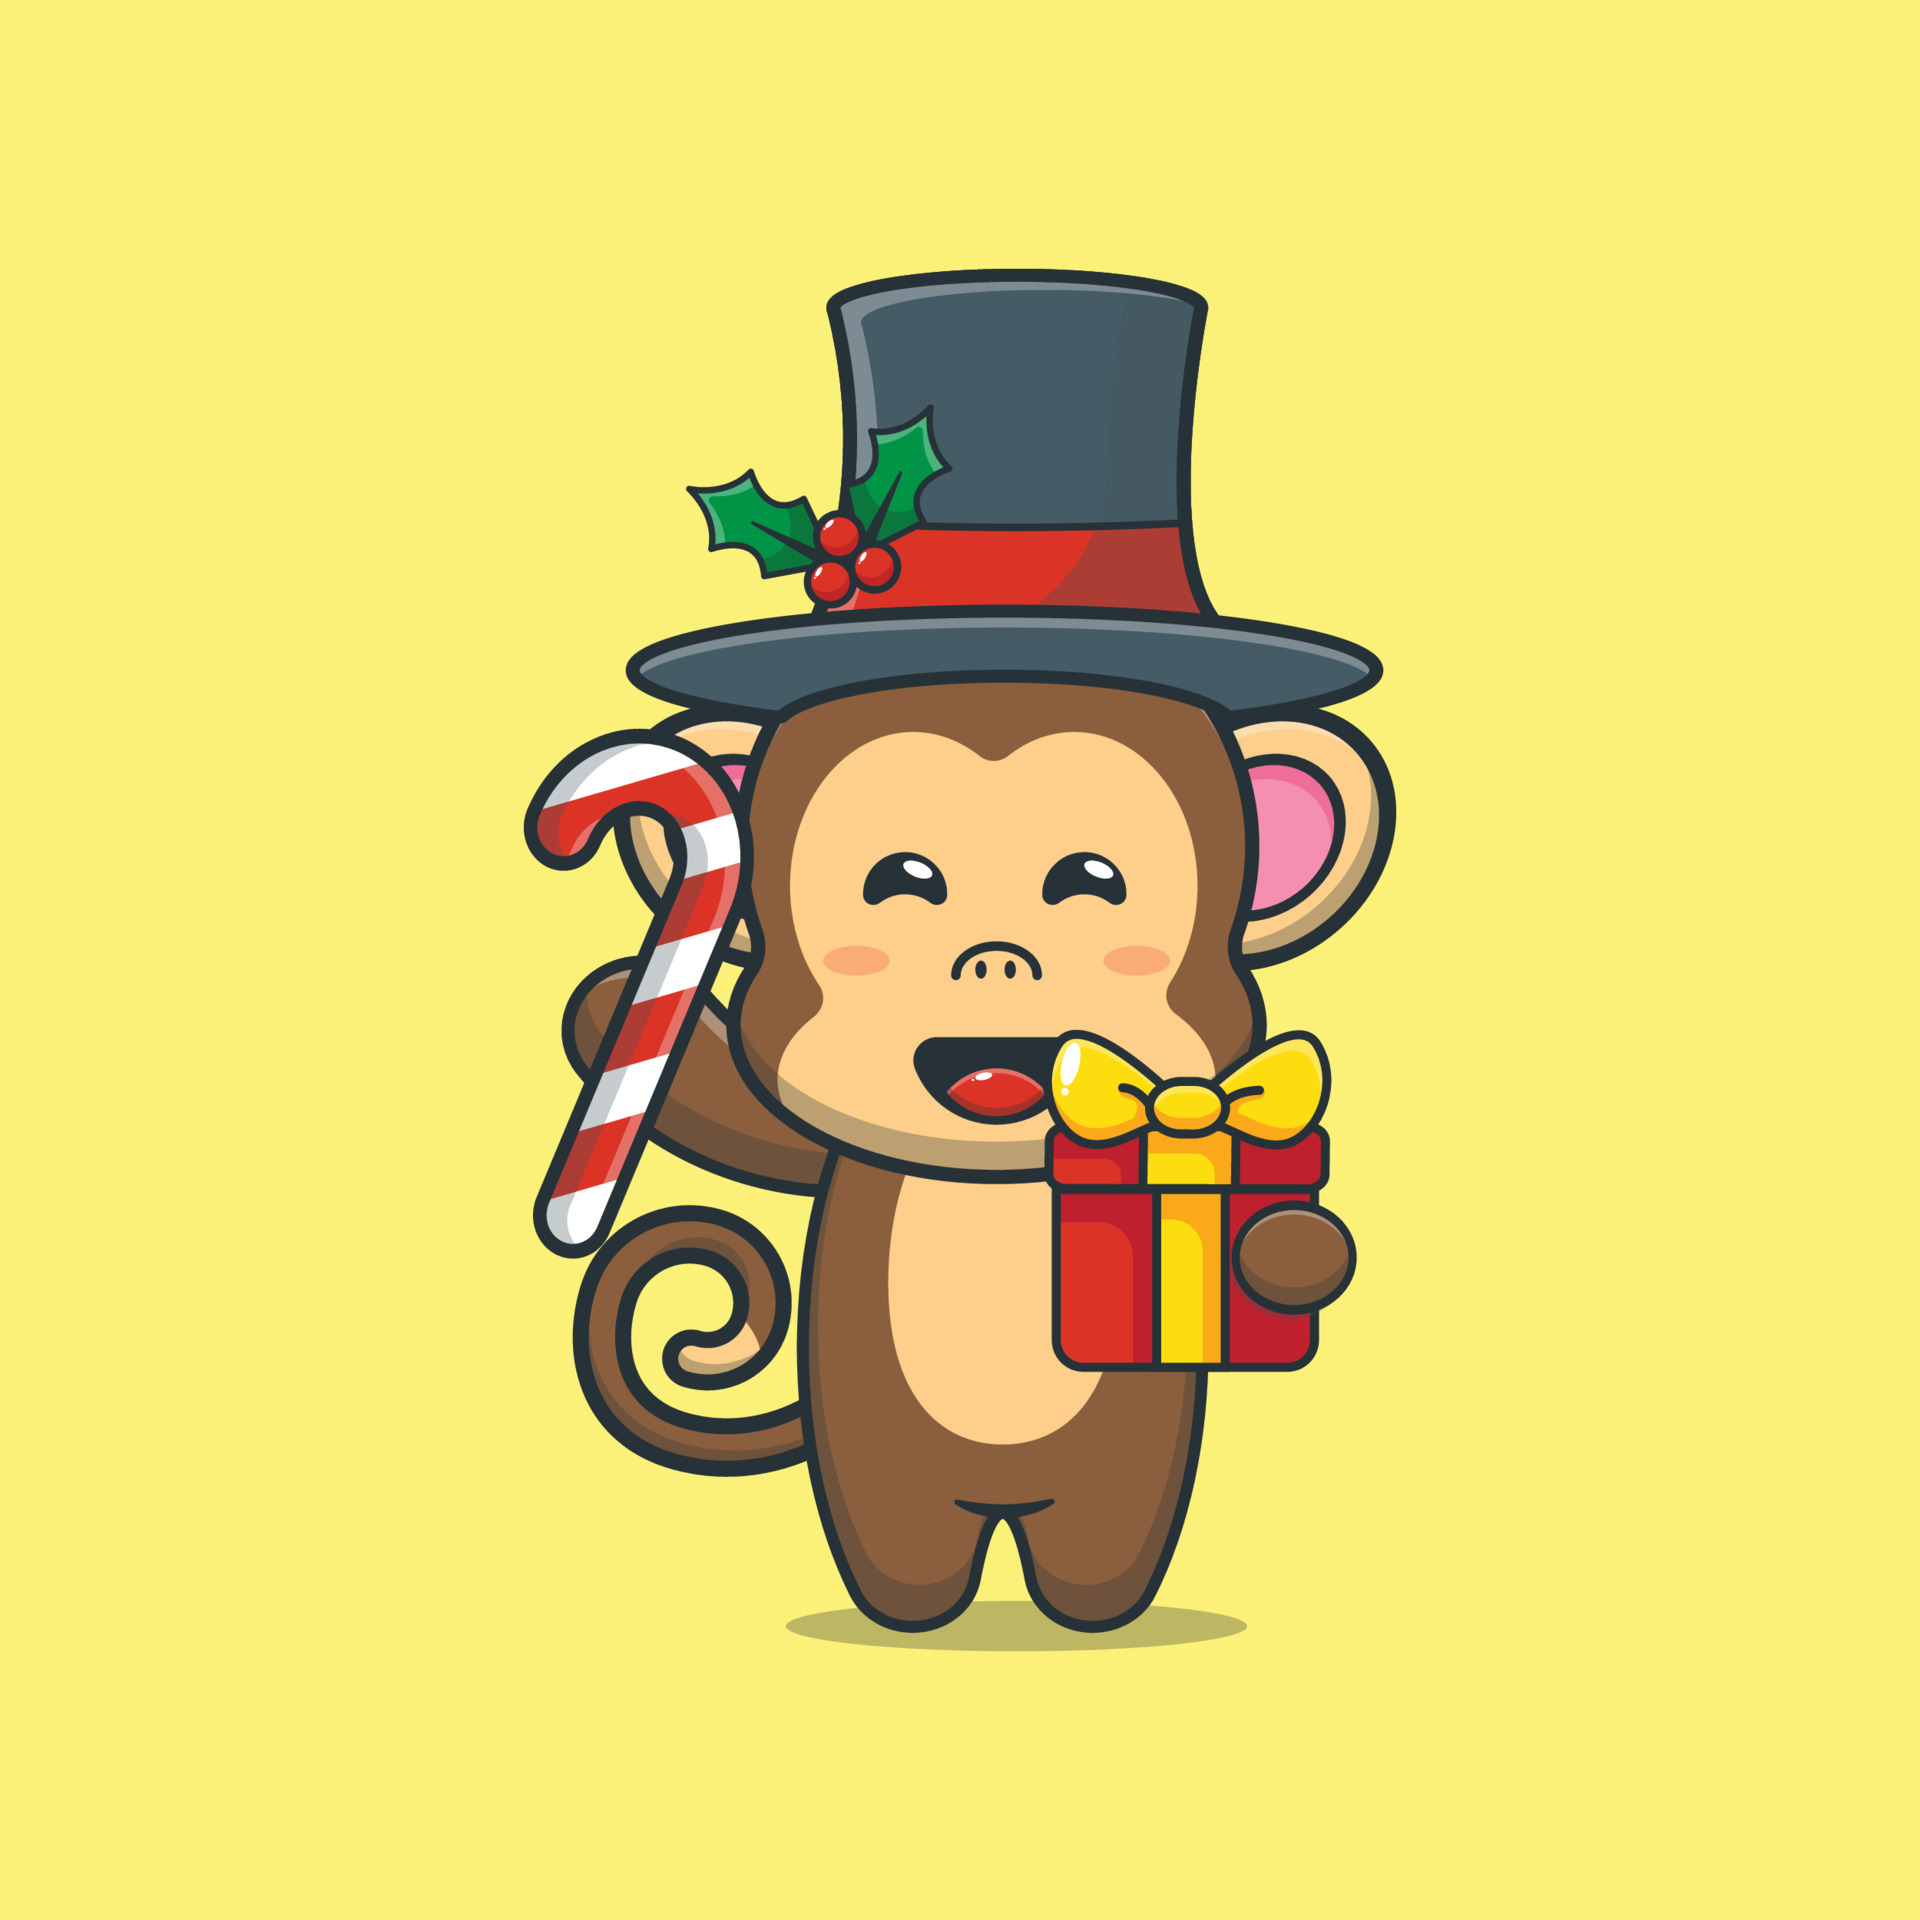 Conjunto de macaco fofo celebrando o natal. segurando um presente